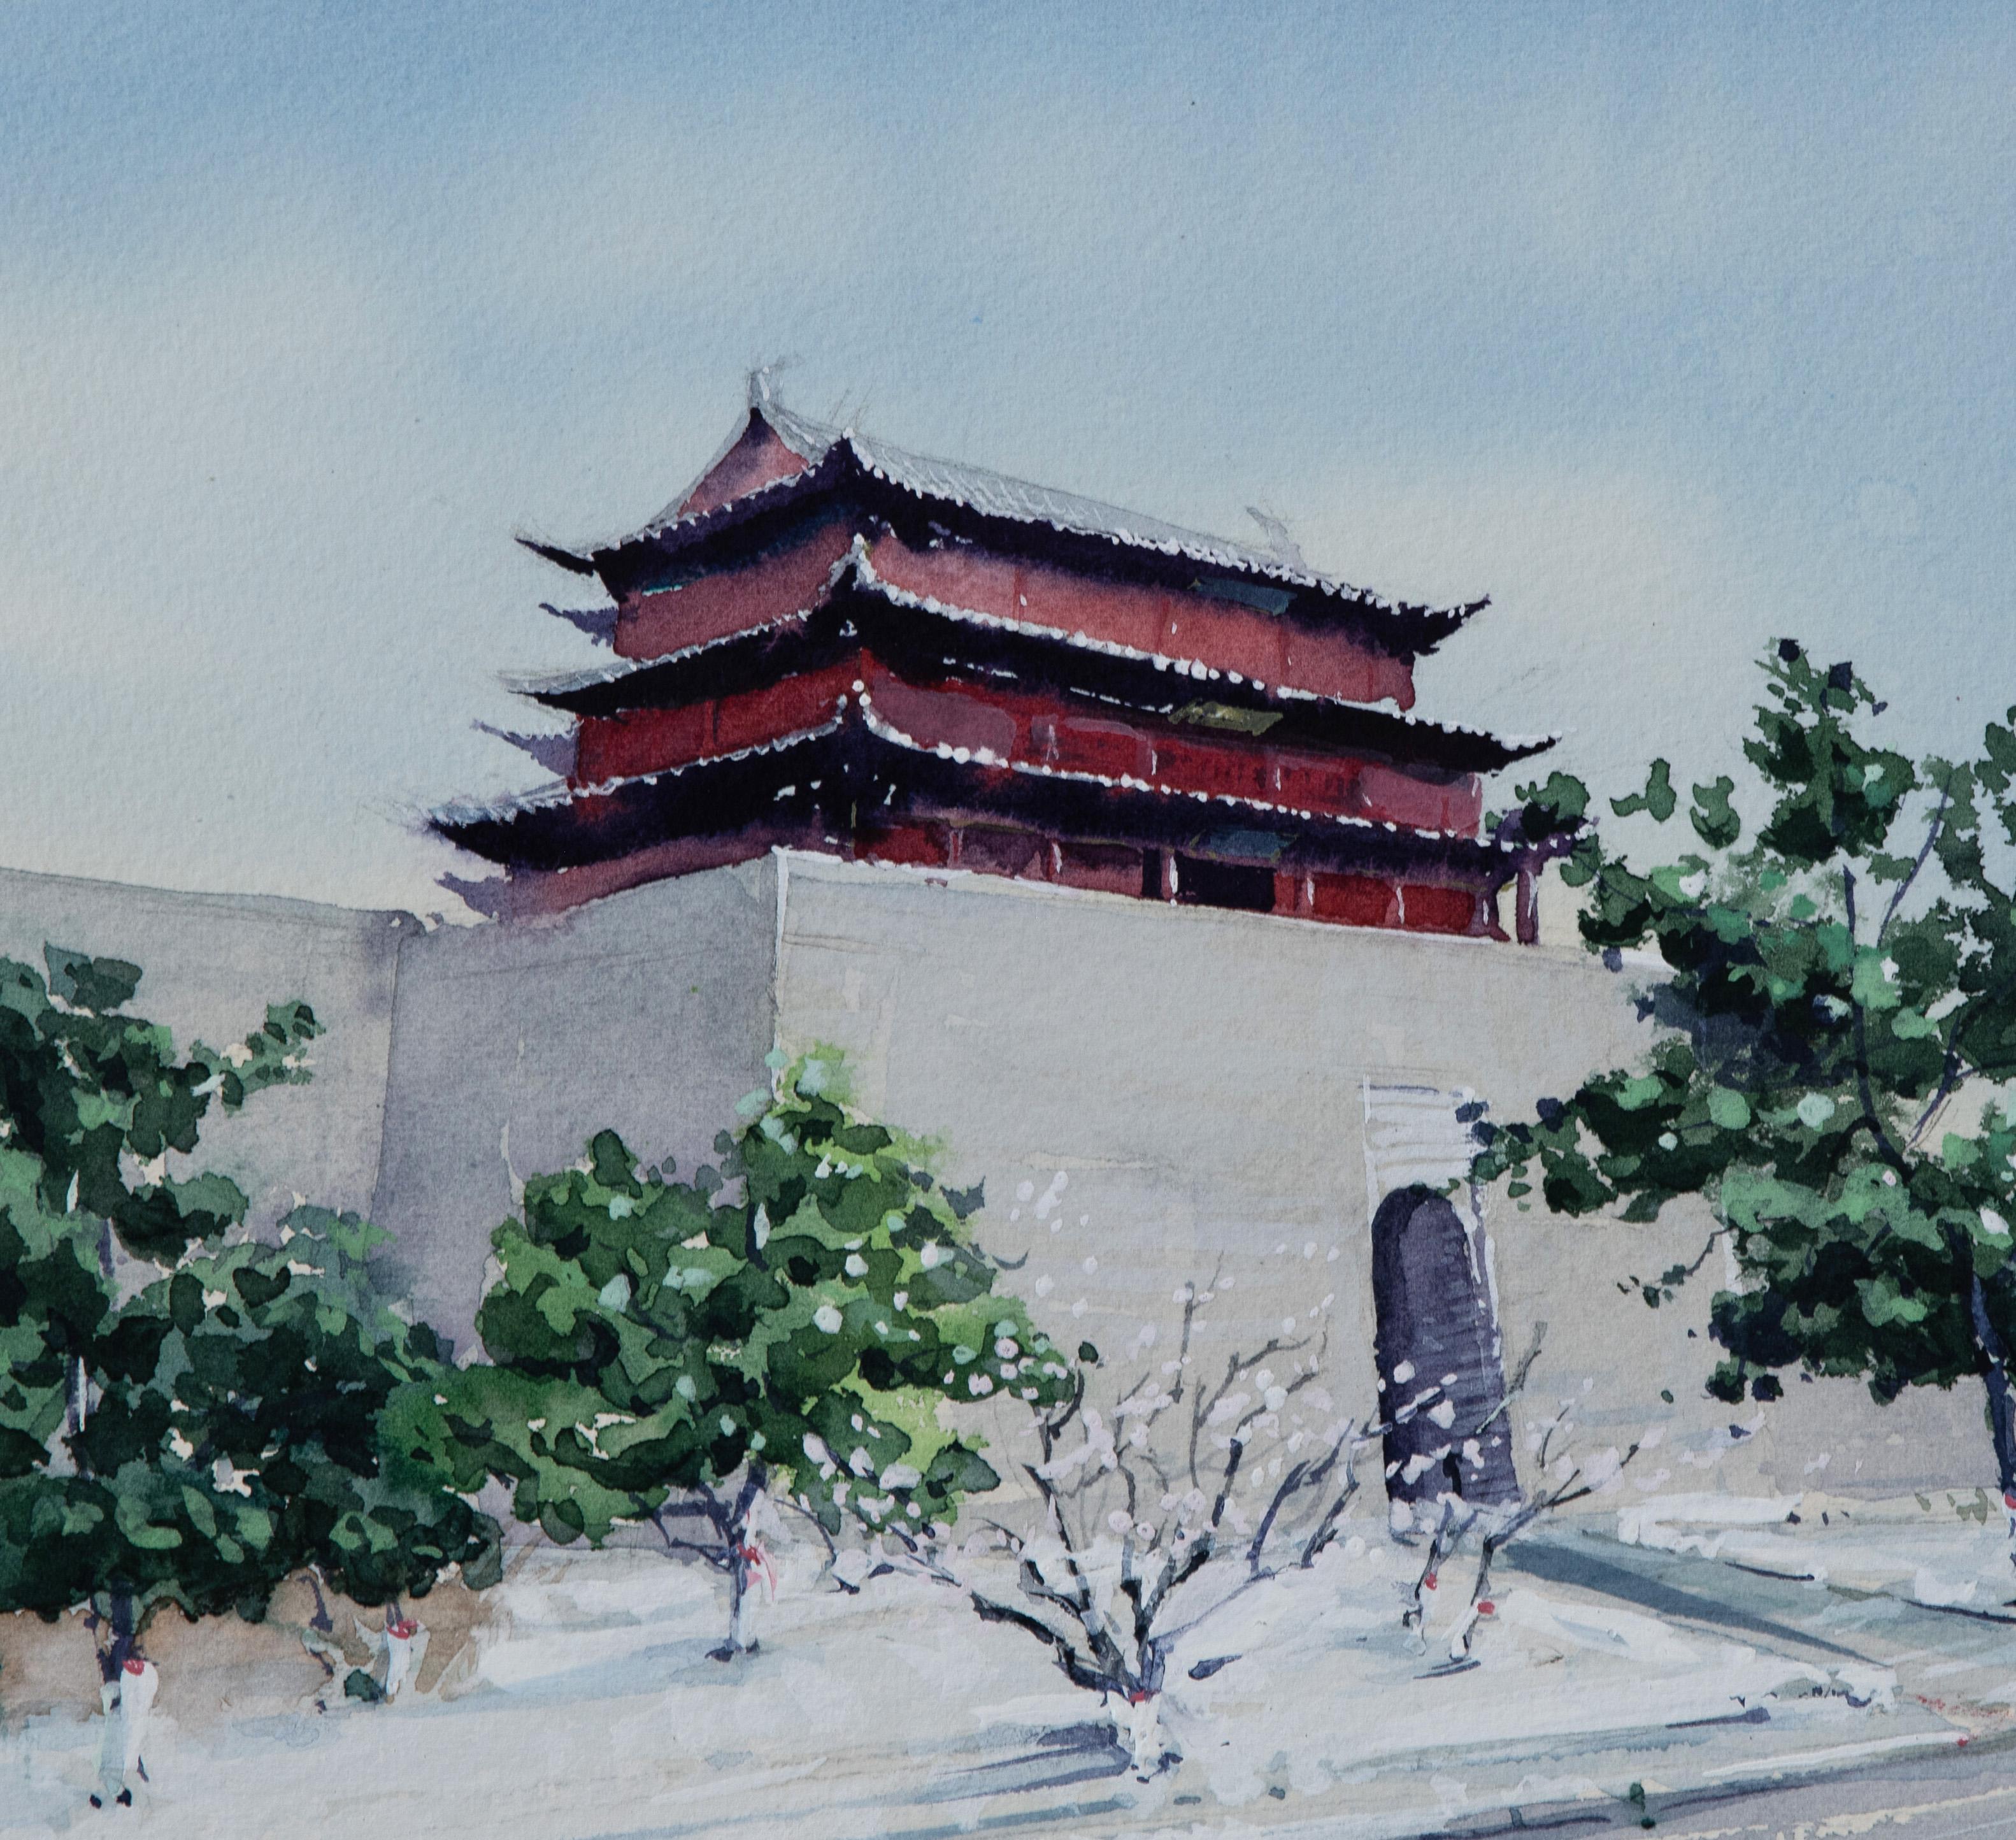 <p>Kommentare des Künstlers<br>Der Künstler Siyuan Ma stellt einen Tempel dar, der auf der alten Stadtmauer Chinas thront. Diese Gebäude stellen wichtige Verteidigungsanlagen dar und sind ein wichtiges Zeugnis der chinesischen Architekturgeschichte.